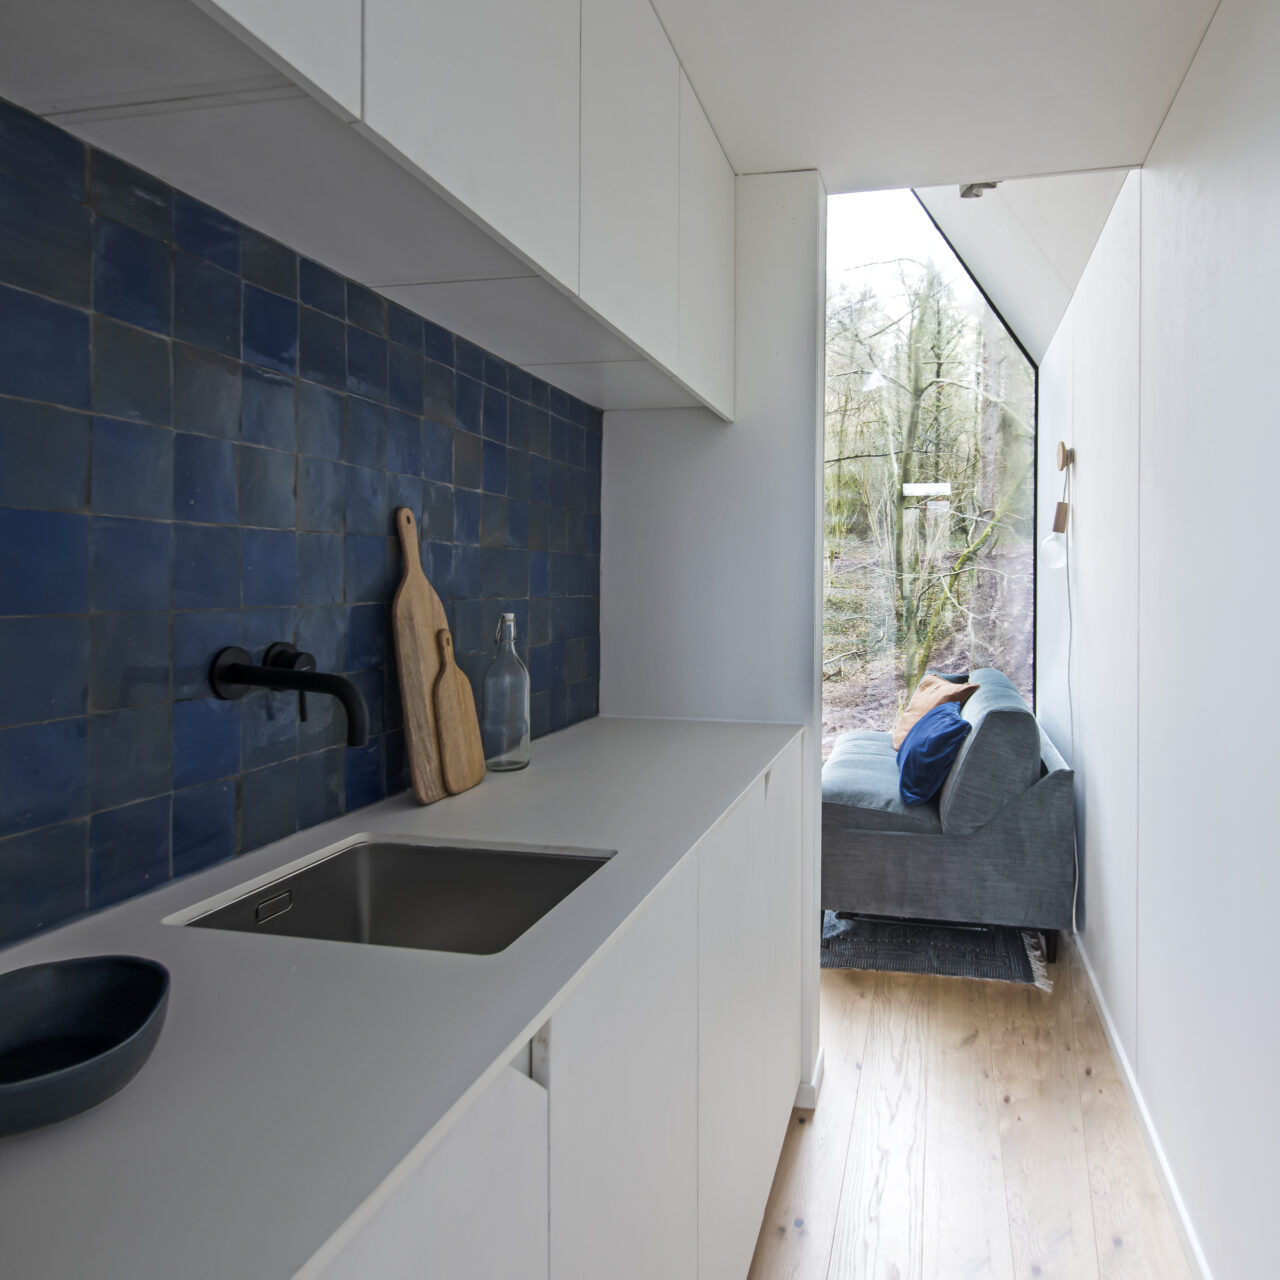 binnenschrijnwerk met witte keuken met blauwe fiances en zetel